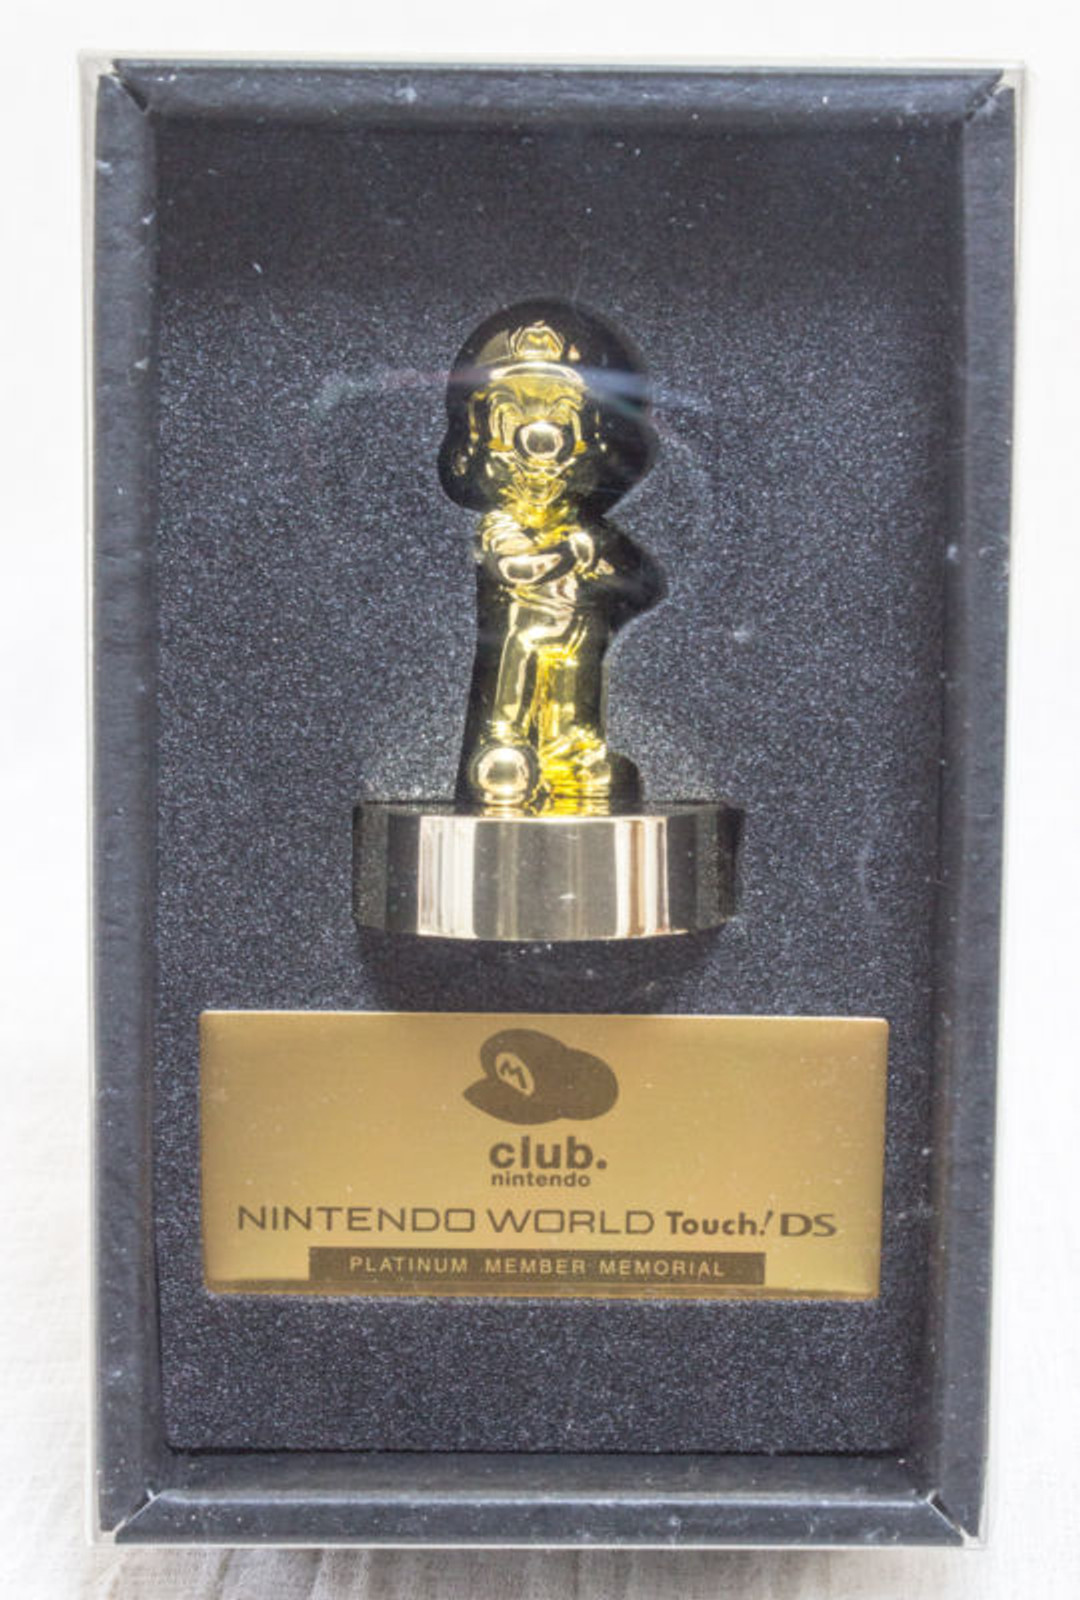 Club Nintendo Platinum Member Limited Gold Super Mario Bro. Figure JAPAN NES